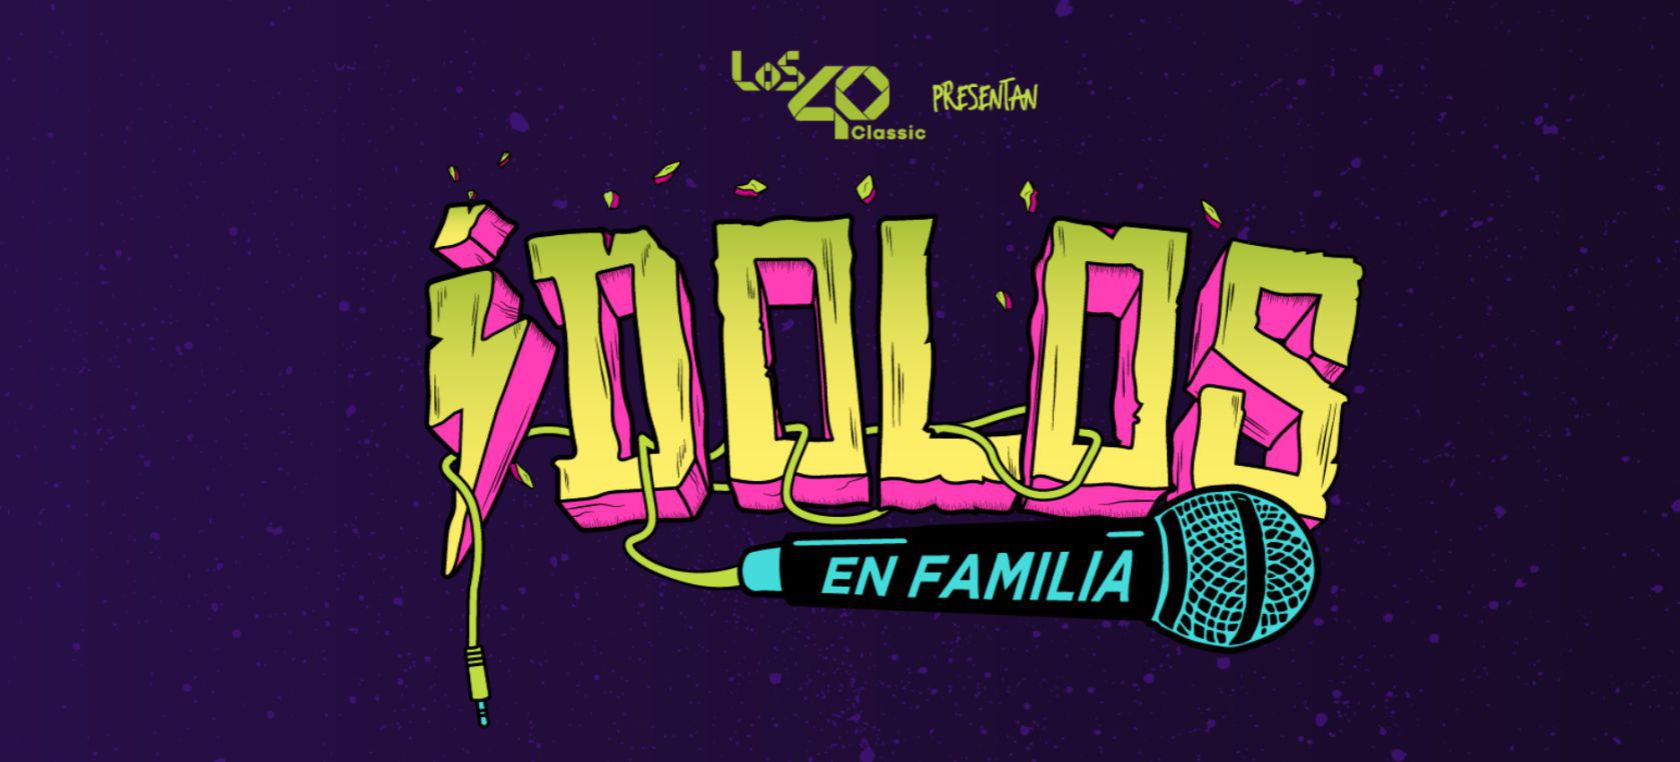 ‘ídolos’ llega a Zaragoza, Barcelona y Santiago de Compostela con un espectáculo musical para toda la familia